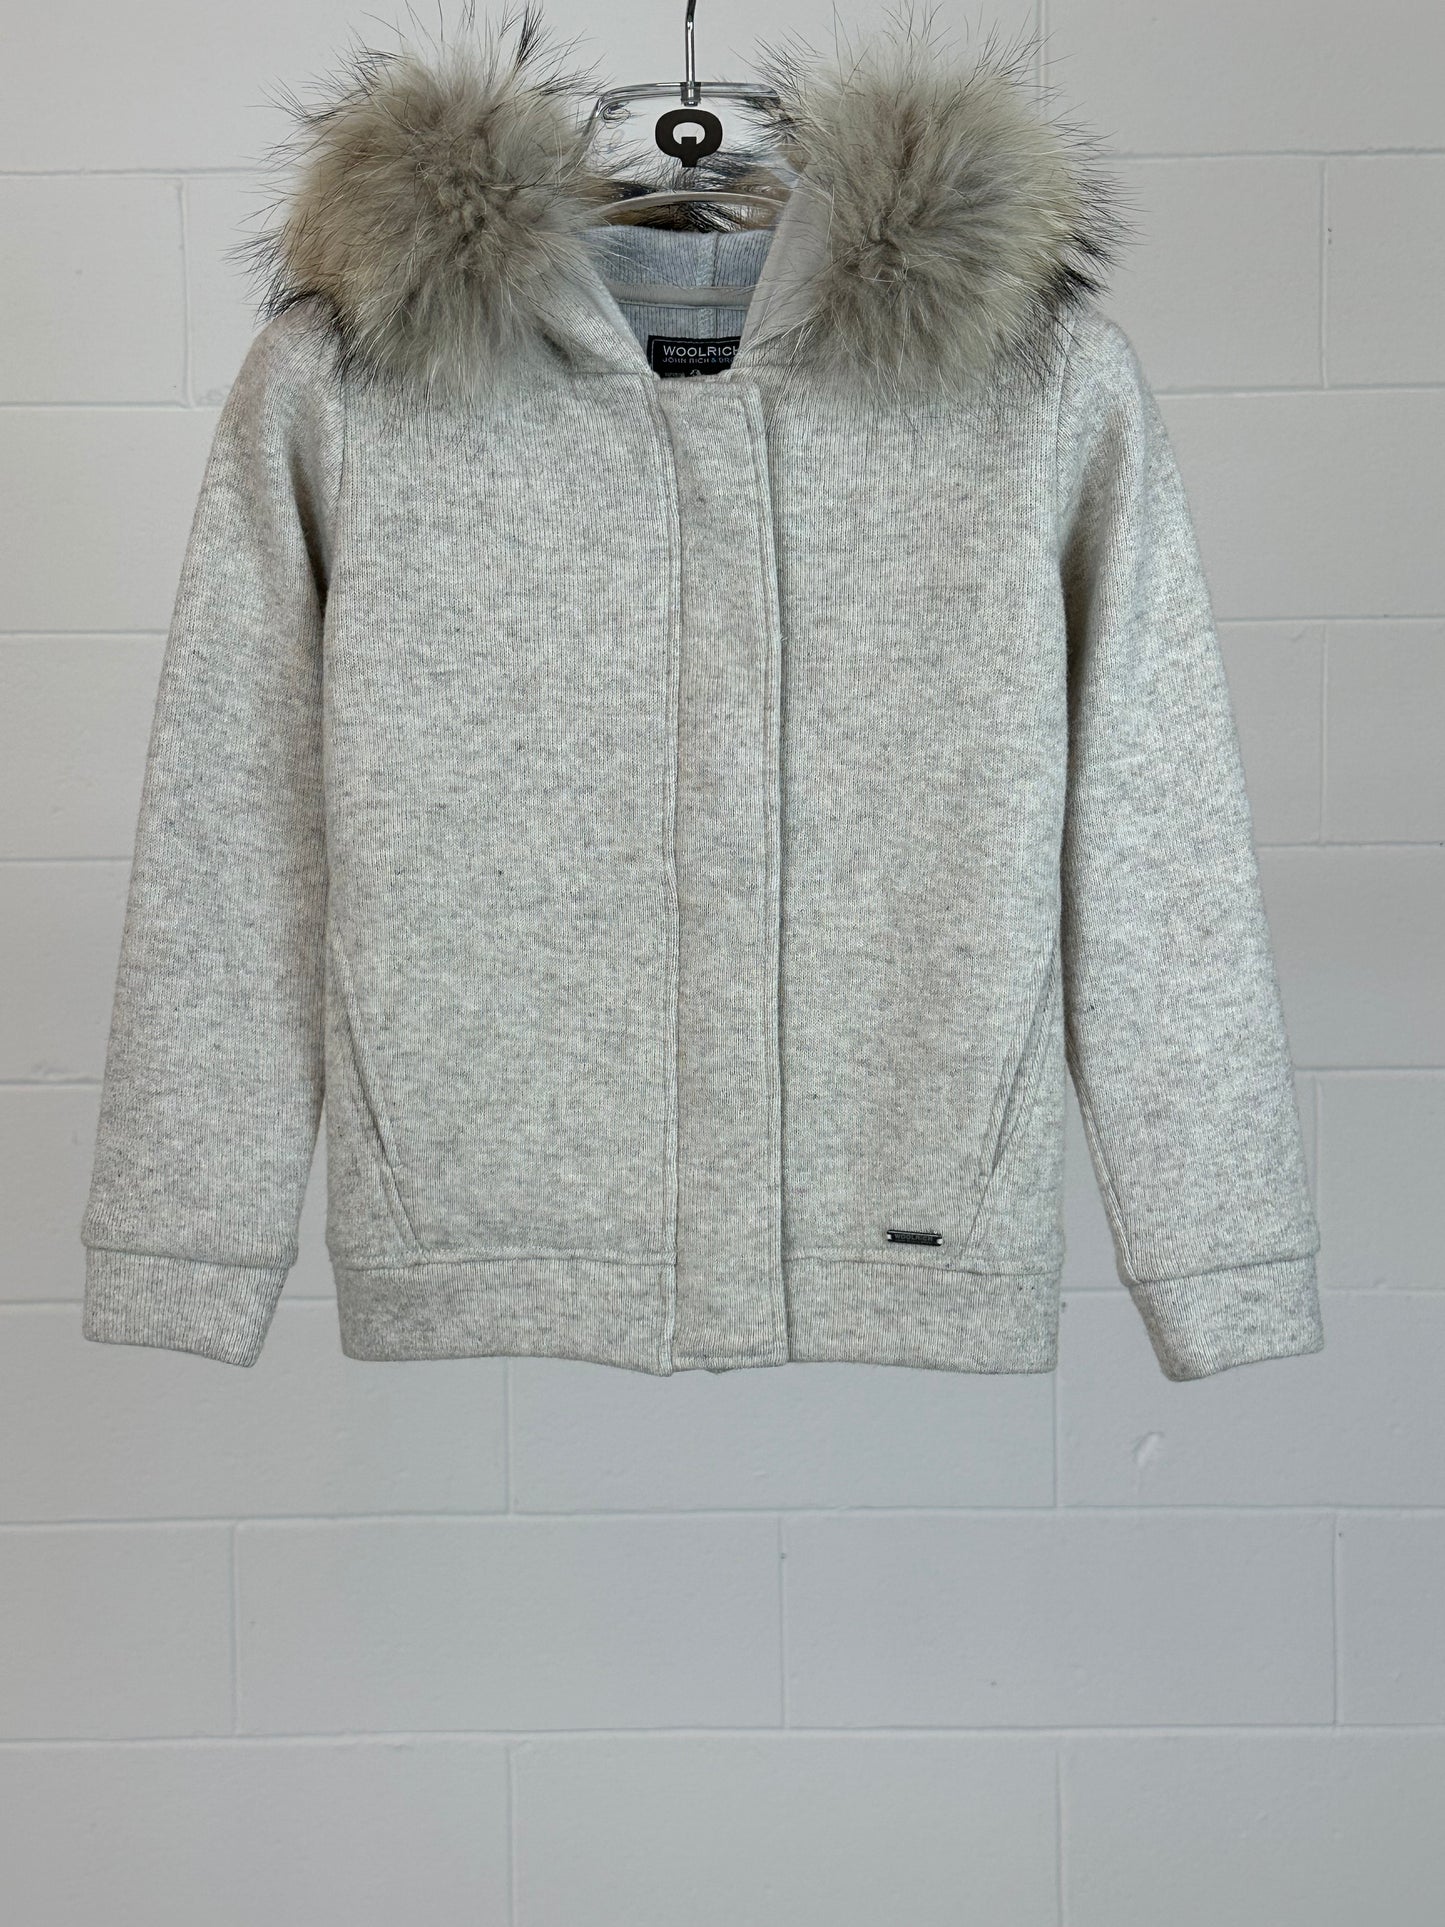 Wool Cotton Zipped Jacket